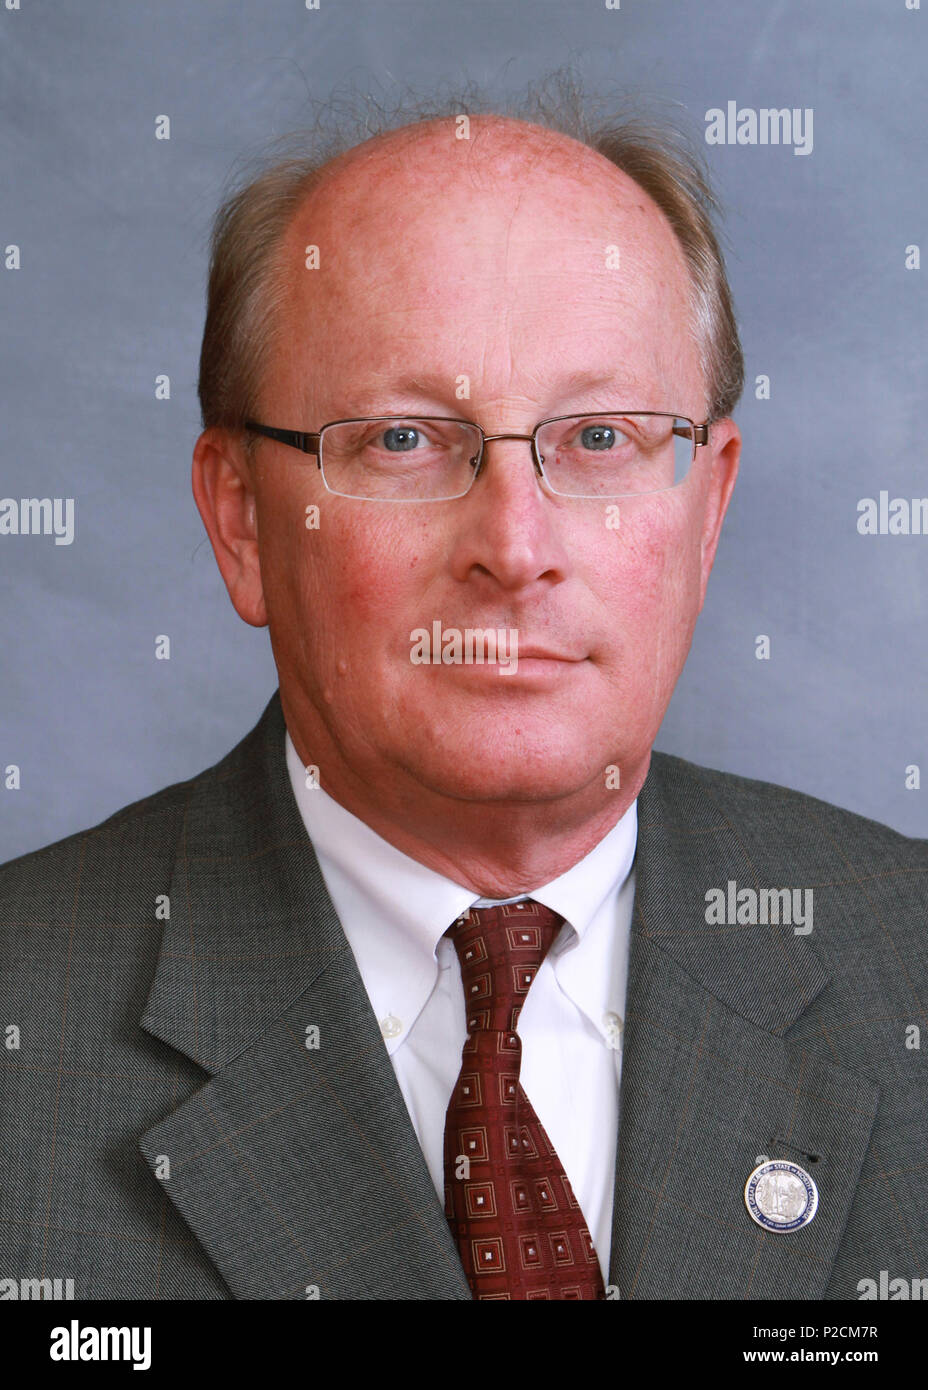 . Inglese: Questa è la foto su N.C. Assemblea generale profilo del rappresentante. 9 febbraio 2011. Stato della Carolina del Nord 35 Mitch Gillespie NCGA 2012 Foto Stock